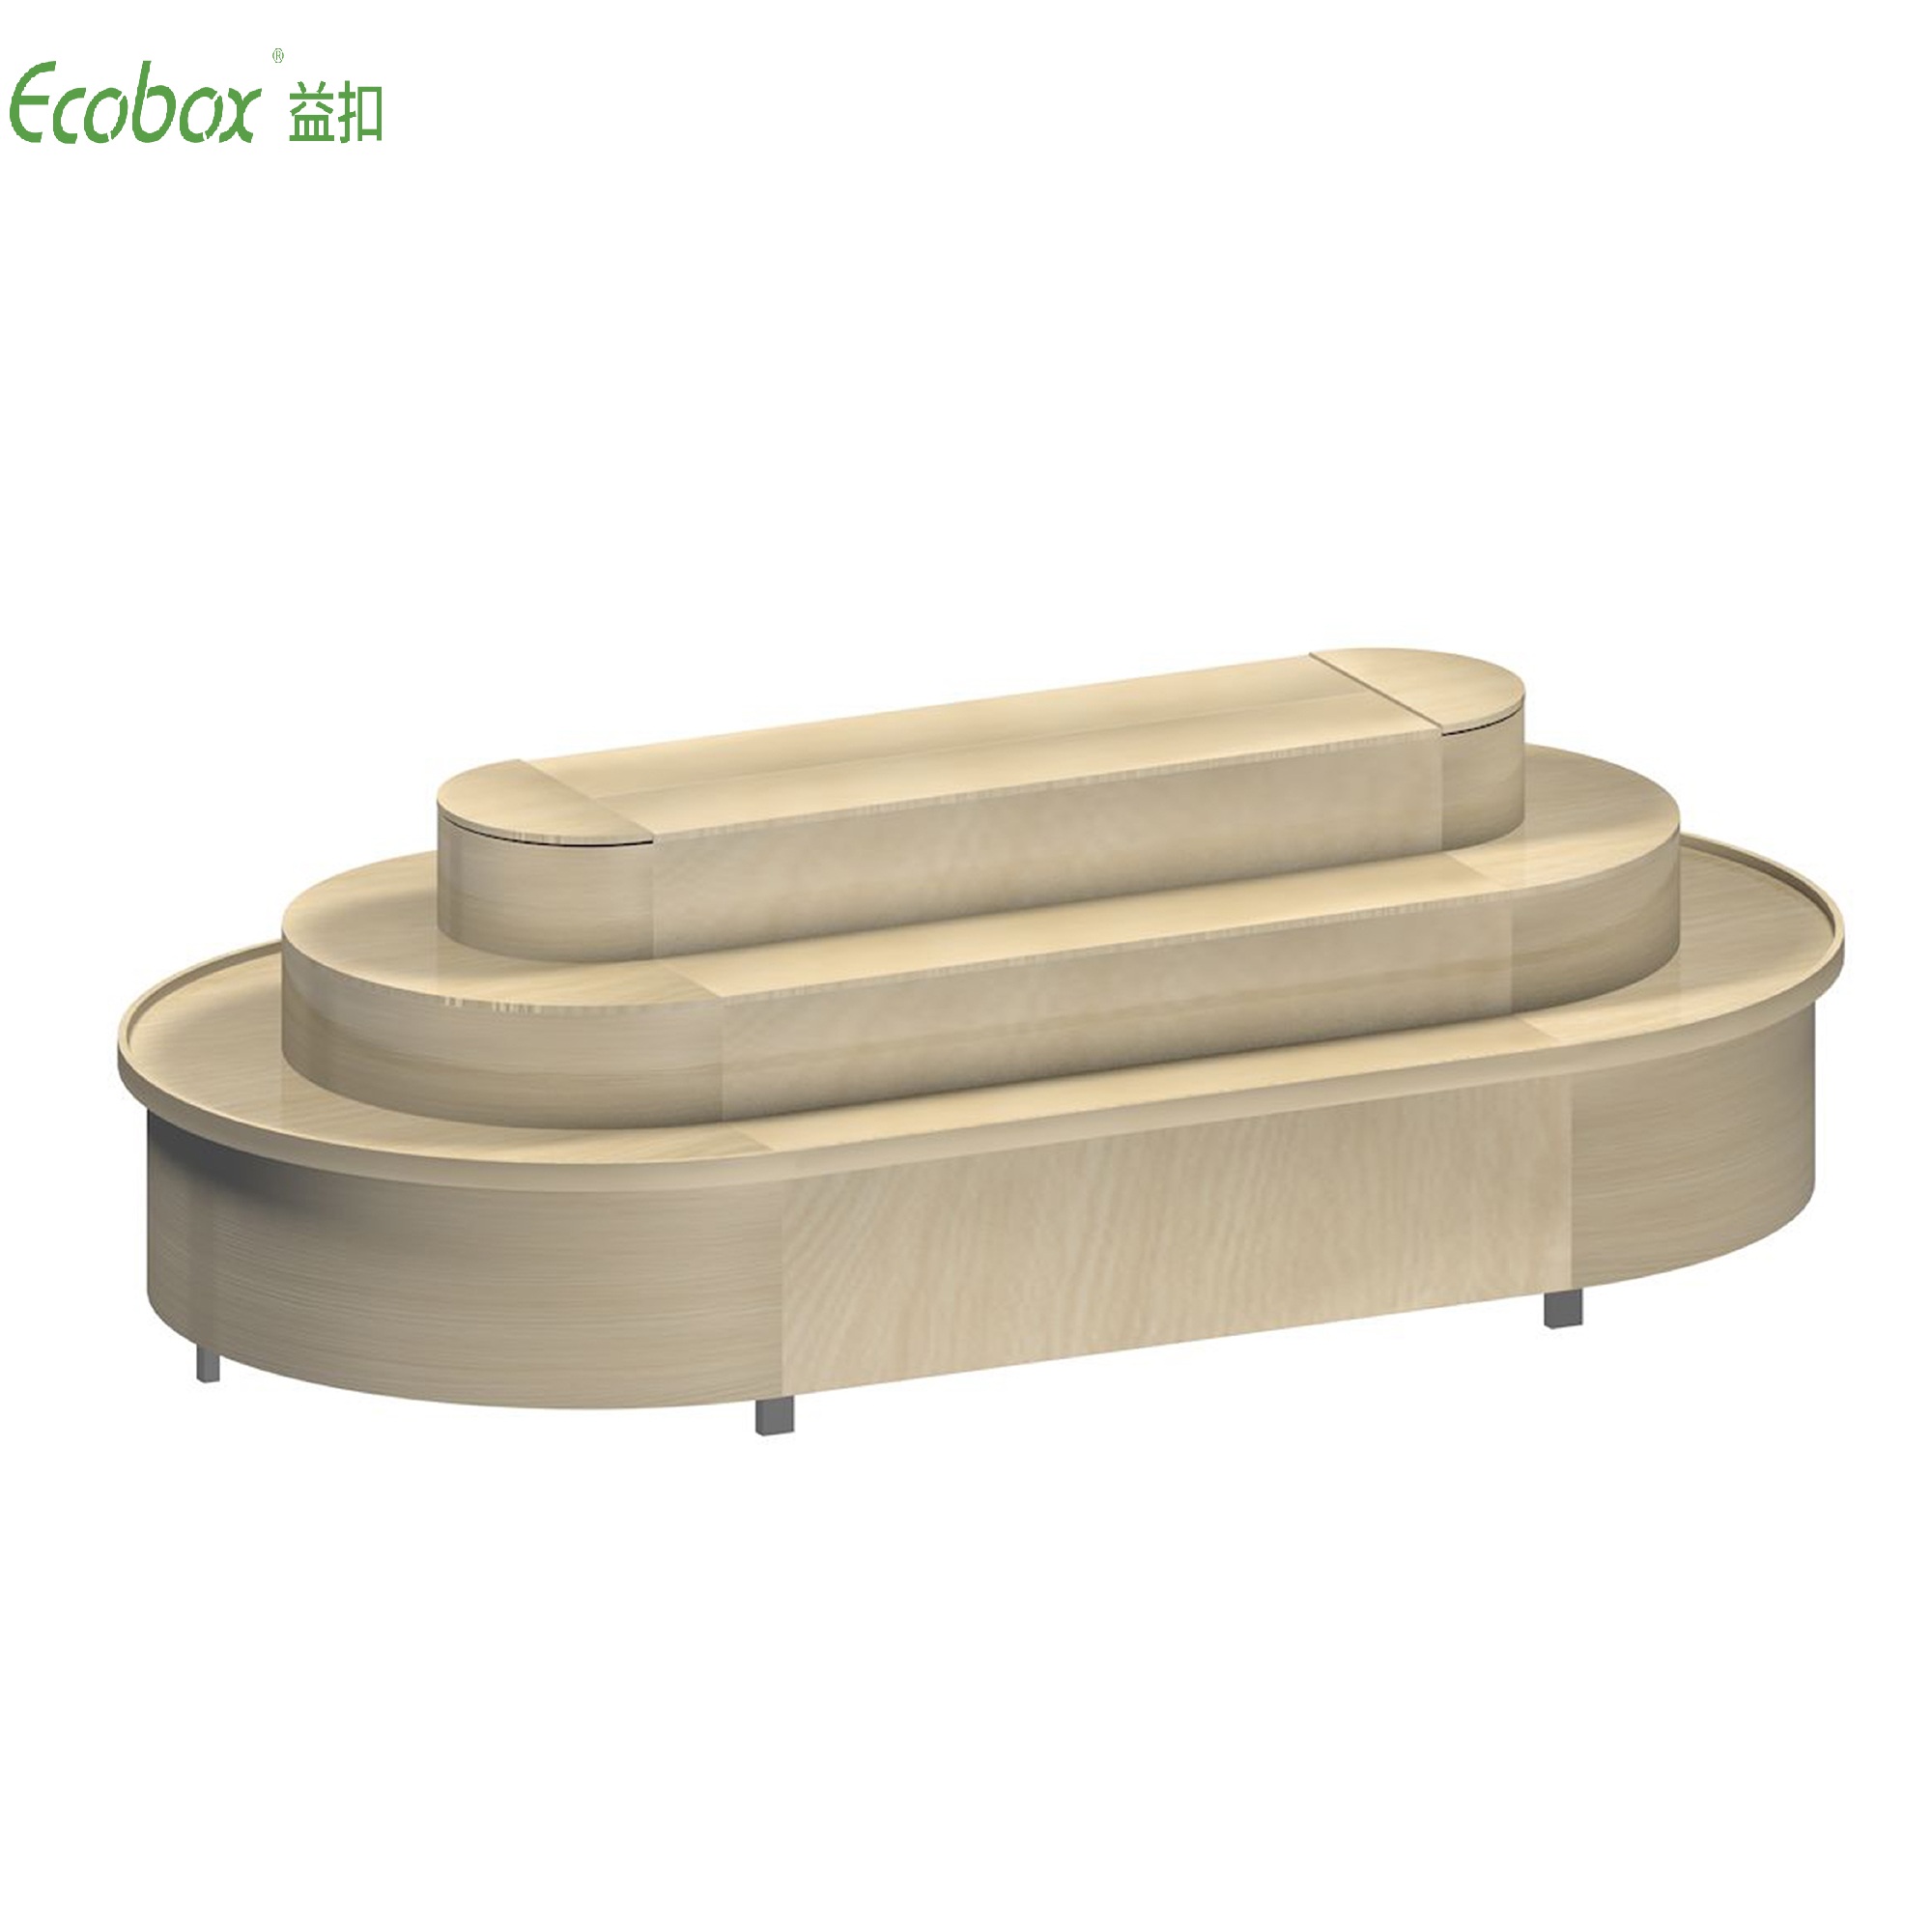 Rundes Regal der Ecobox G003-Serie mit Ecobox-Großbehältern für Supermarkt-Großlebensmitteldisplays